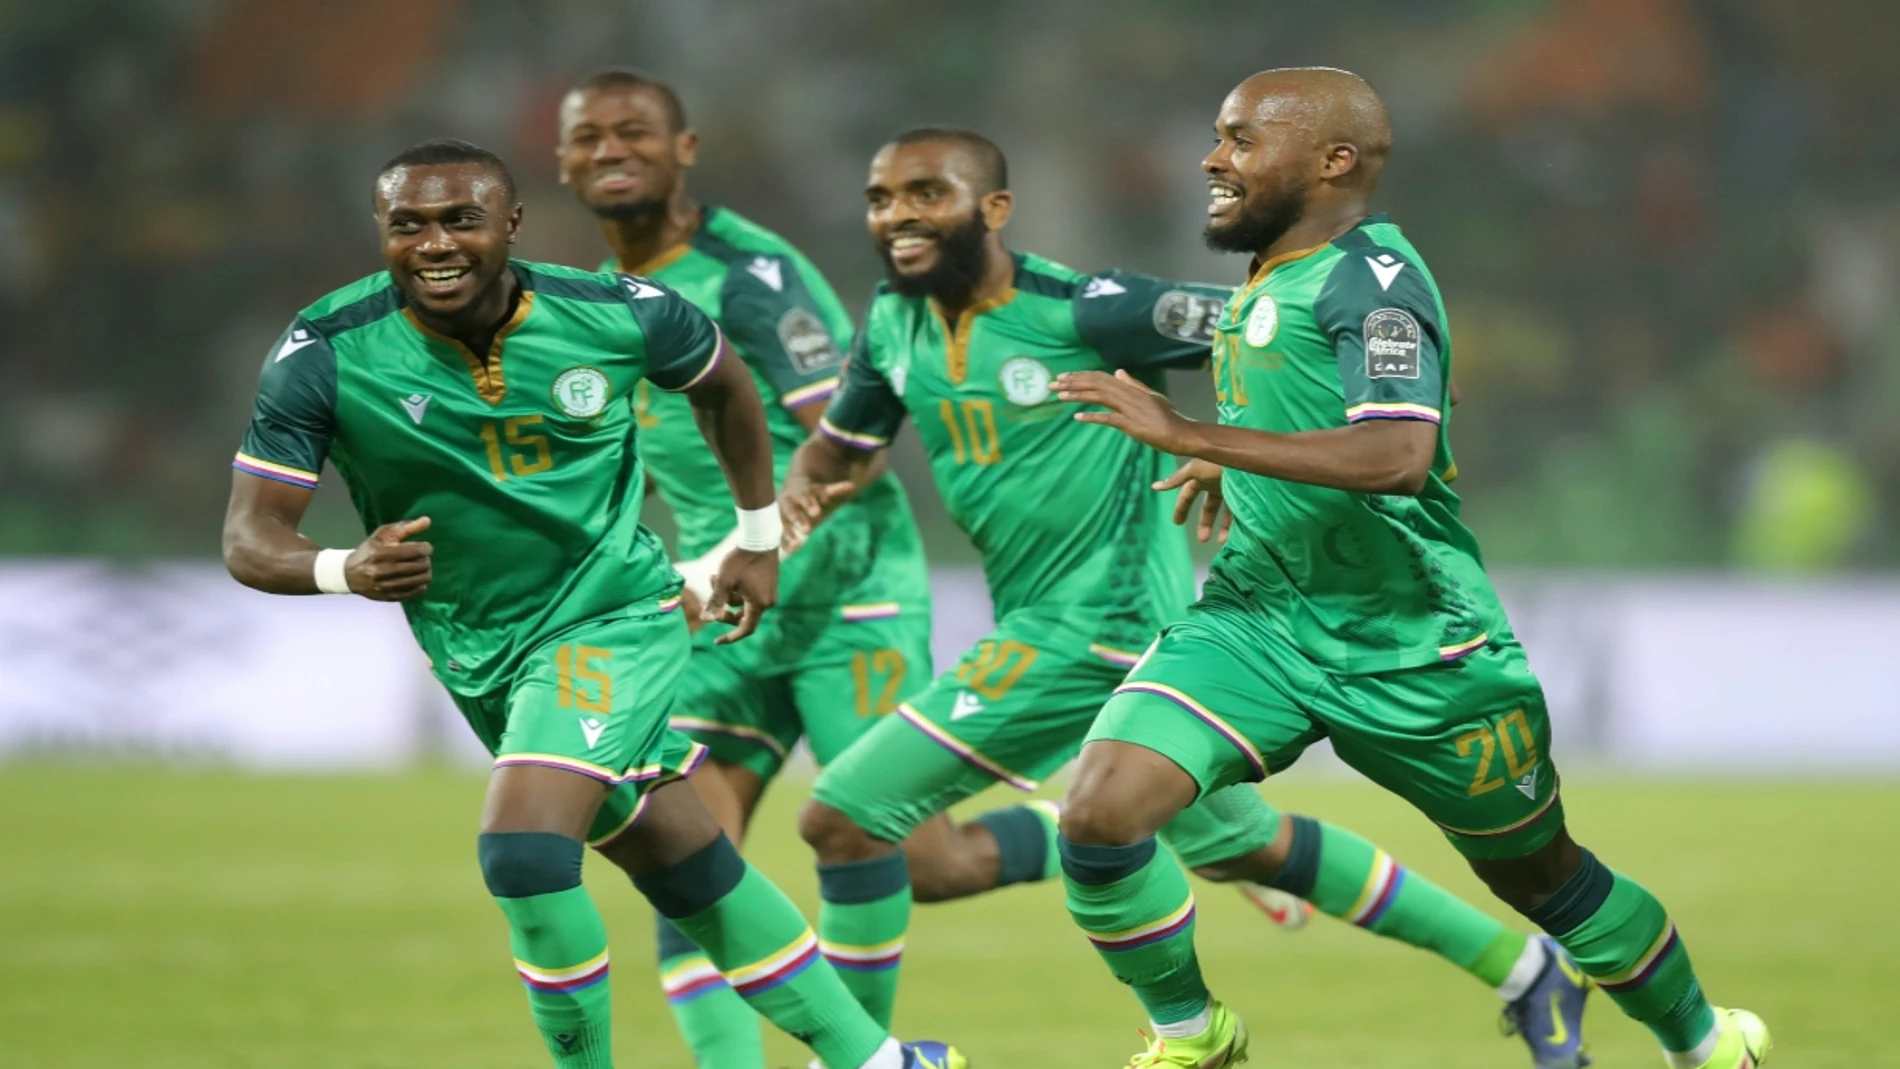 Un jugador defenderá la portería de las Islas Comoras contra Camerún